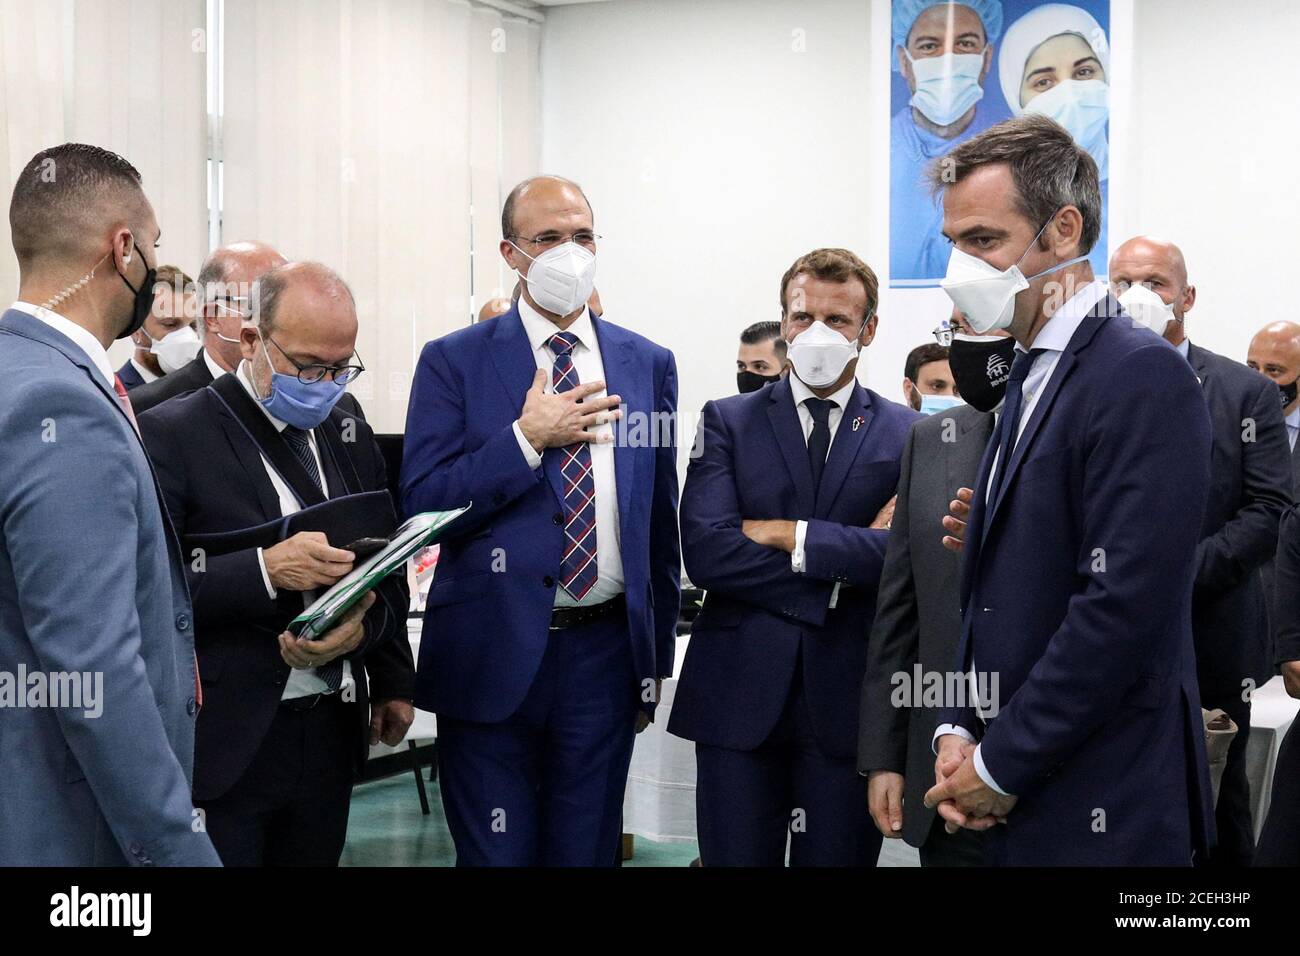 French President Emmanuel Macron and French Health Minister Olivier Veran visit Rafik Hariri University Hospital in Beirut, Lebanon September 1, 2020. Stephane Lemouton/Pool via REUTERS Stock Photo